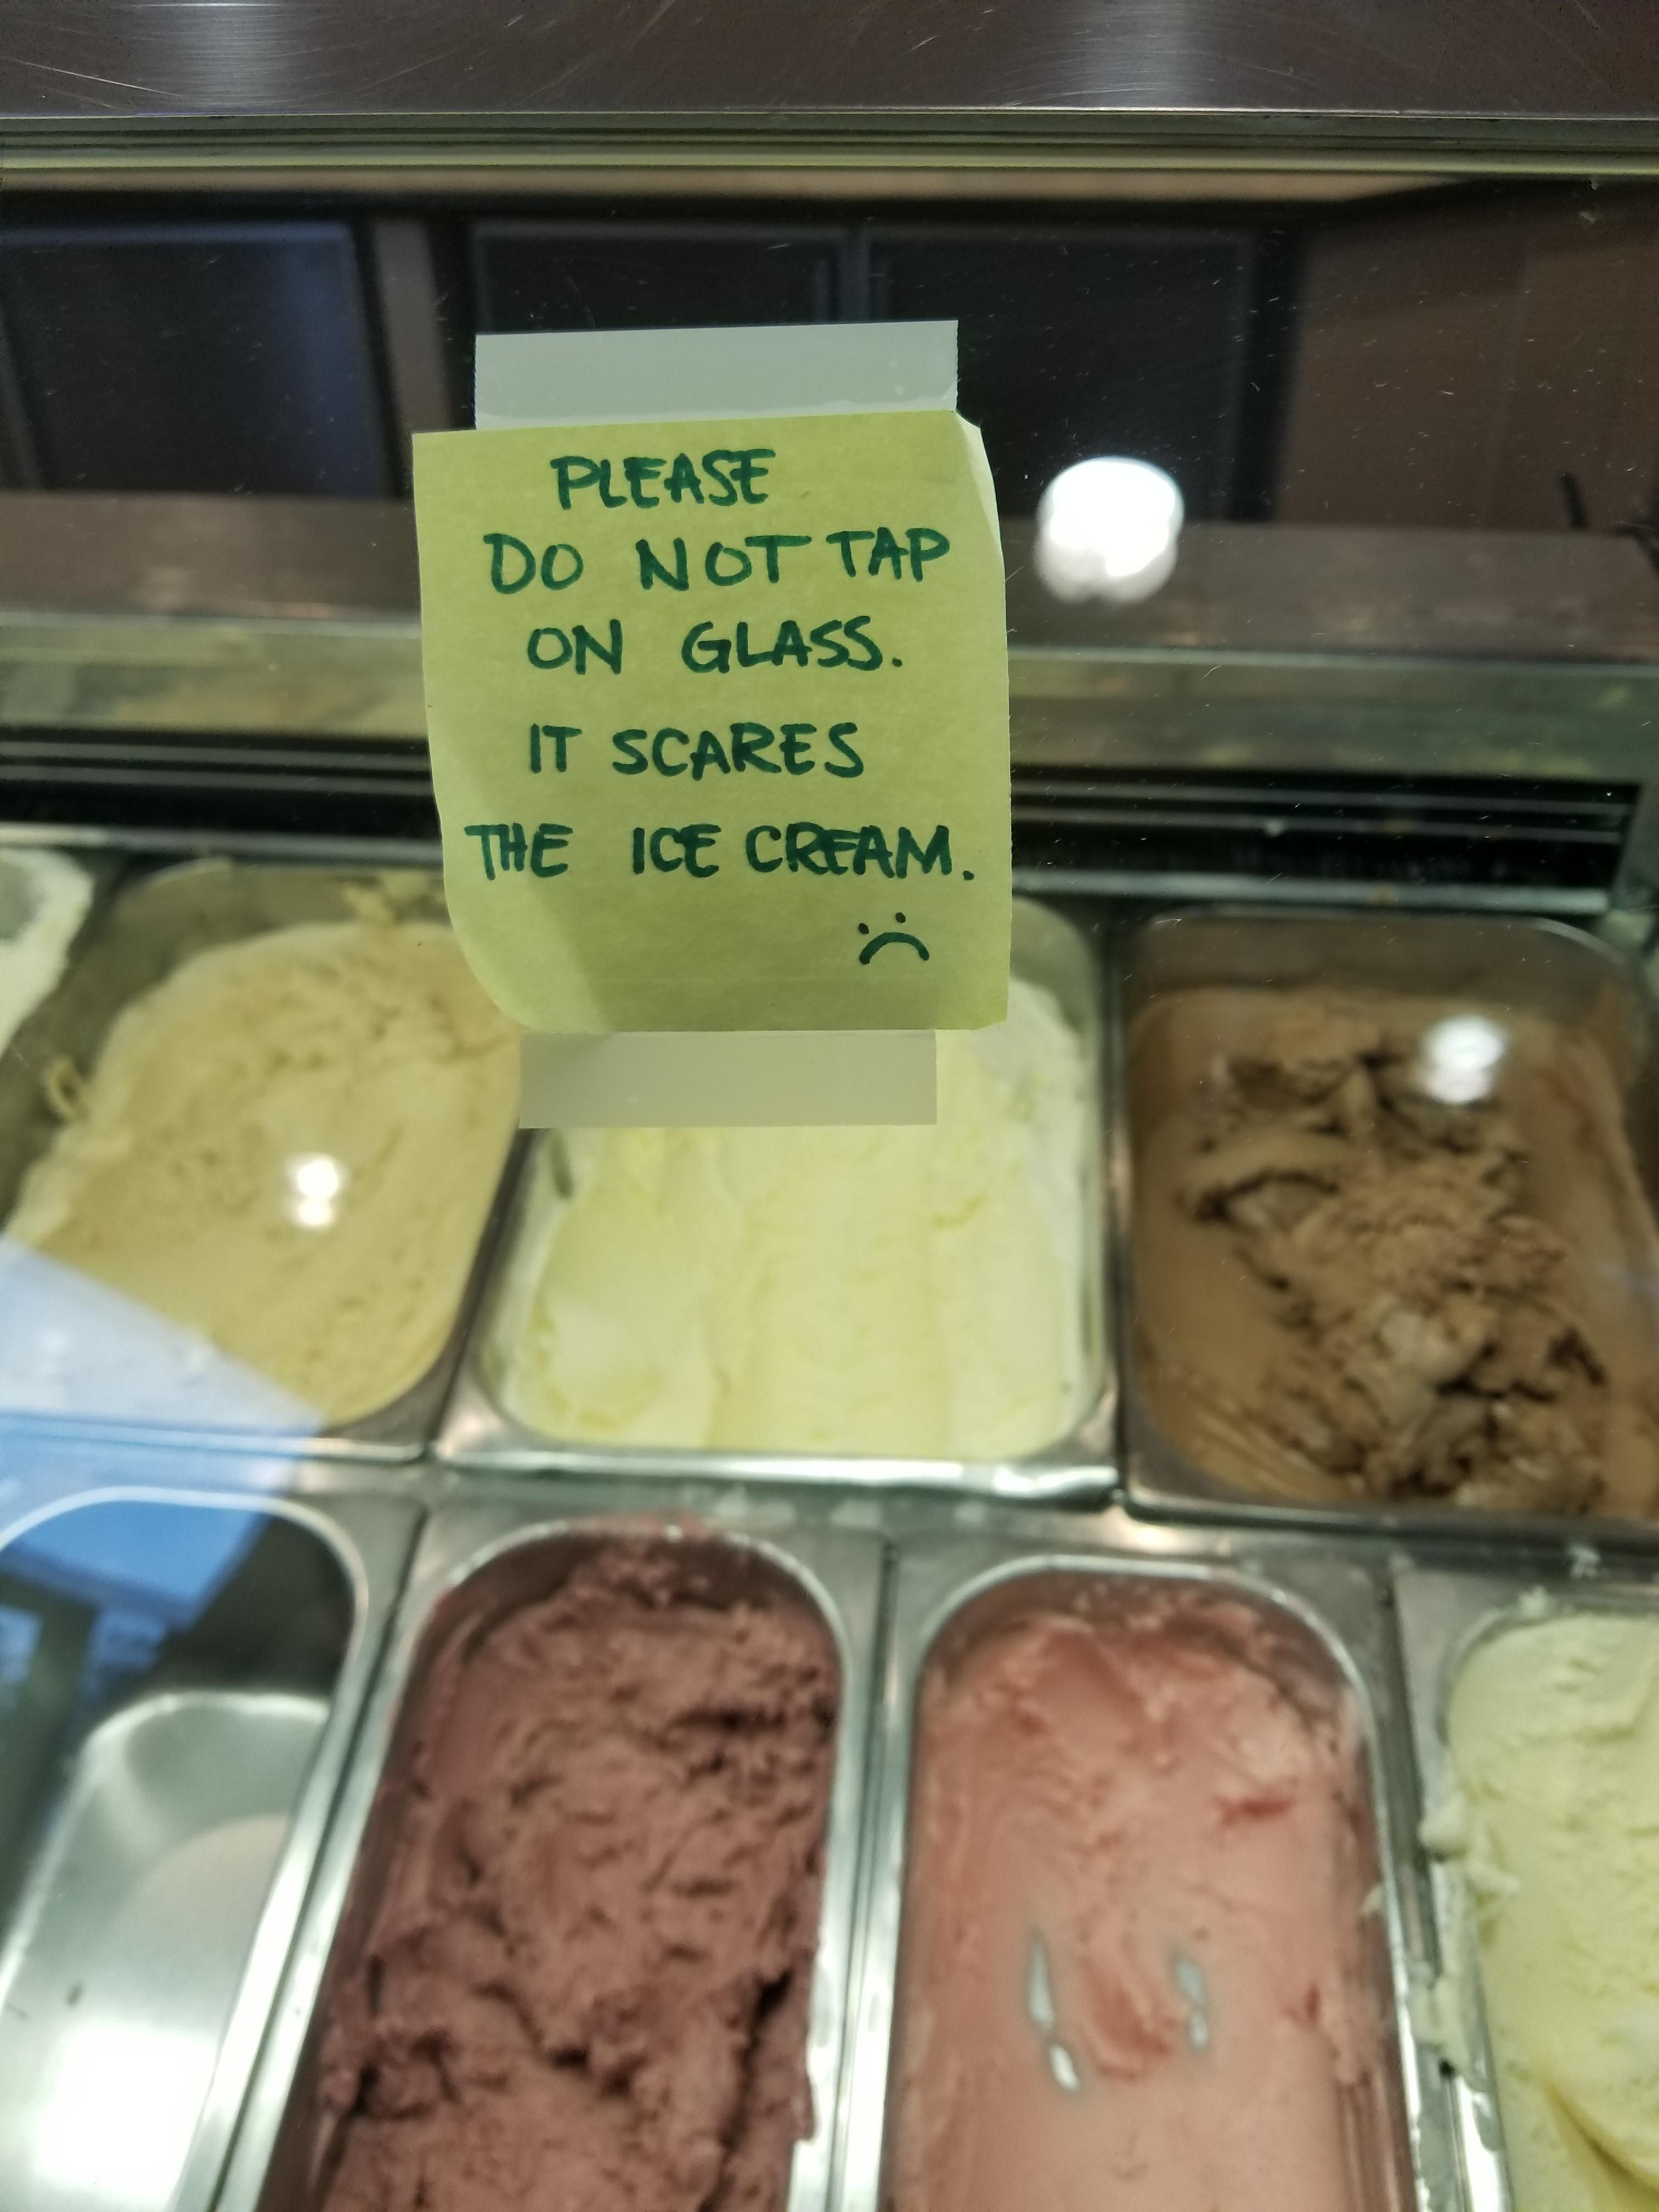 Proper ice cream shop etiquette